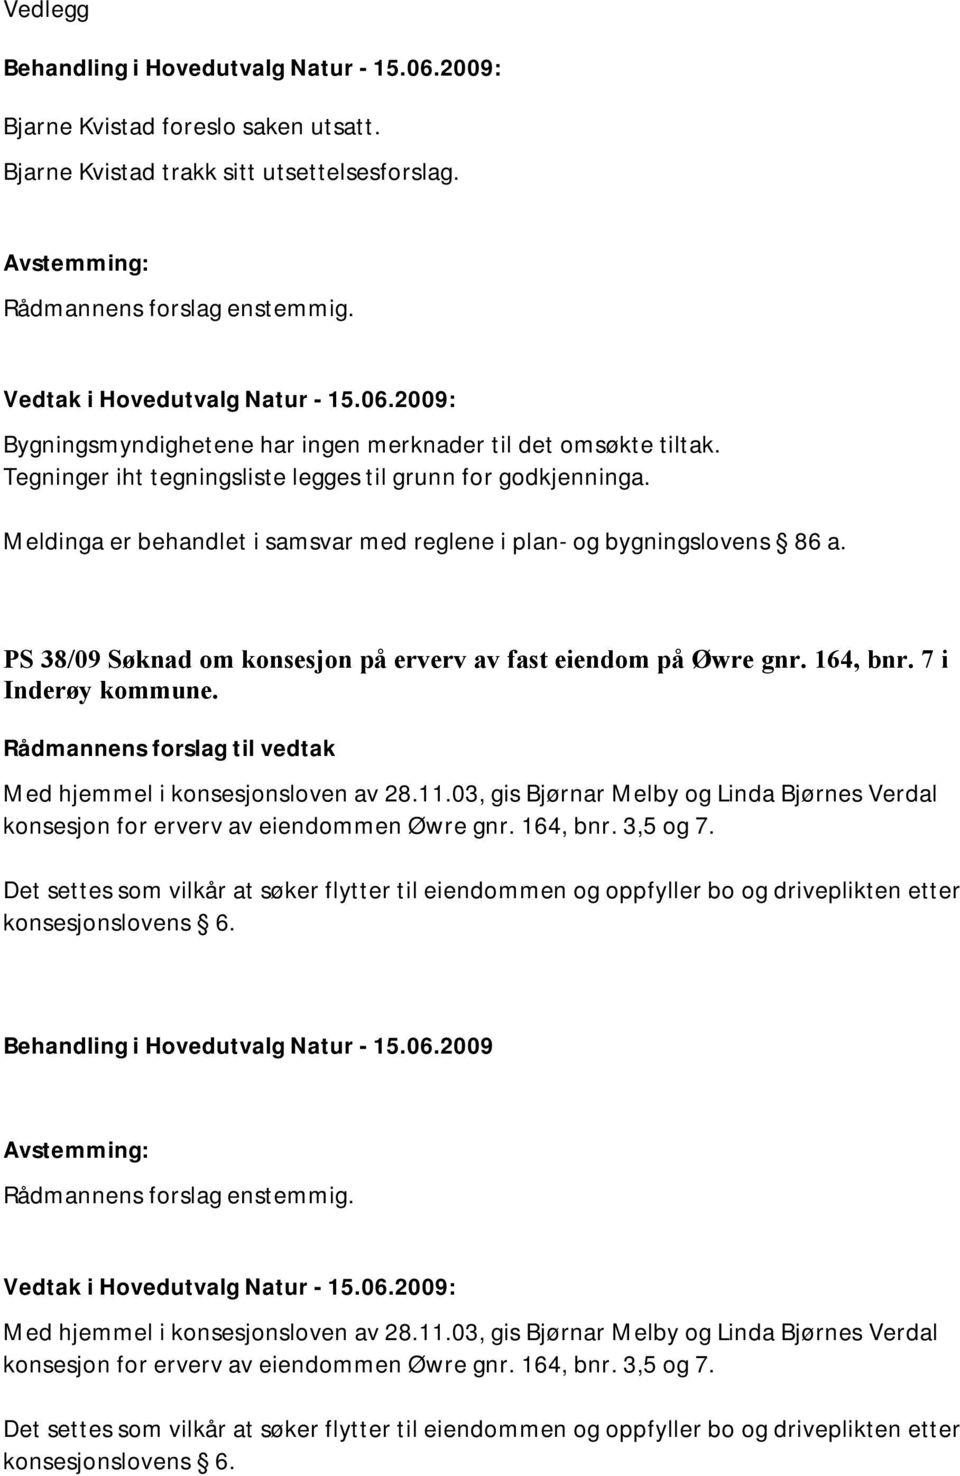 PS 38/09 Søknad om konsesjon på erverv av fast eiendom på Øwre gnr. 164, bnr. 7 i Inderøy kommune. Med hjemmel i konsesjonsloven av 28.11.